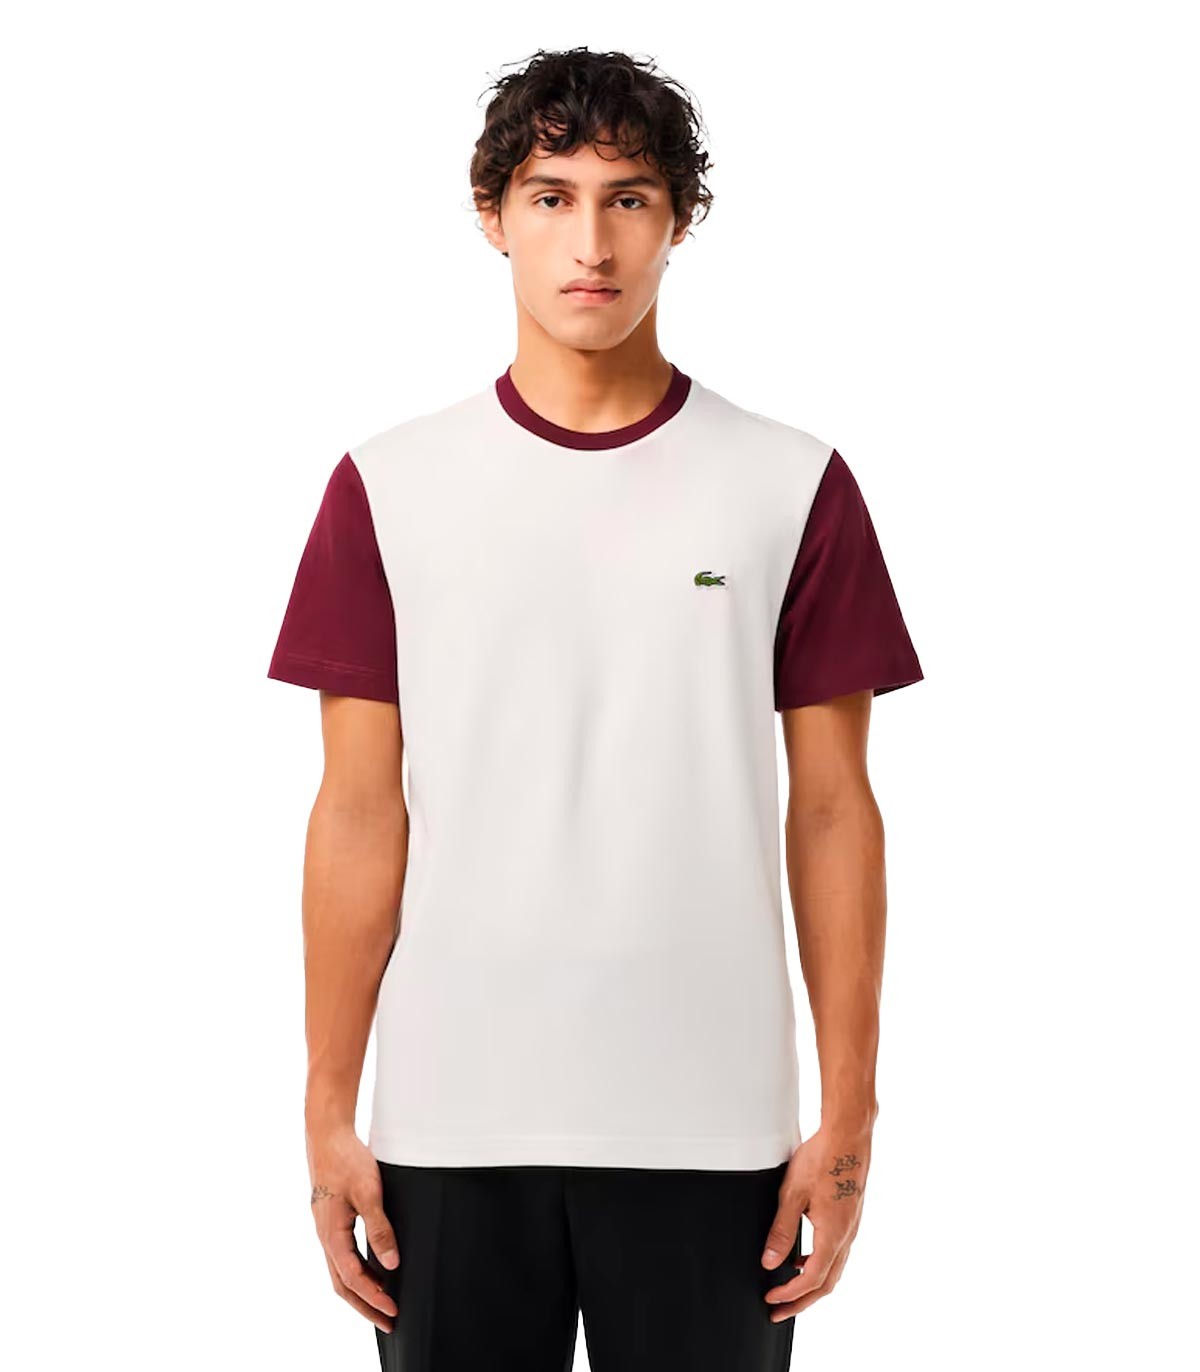 Lacoste - Camiseta Regular Fit - Blanco